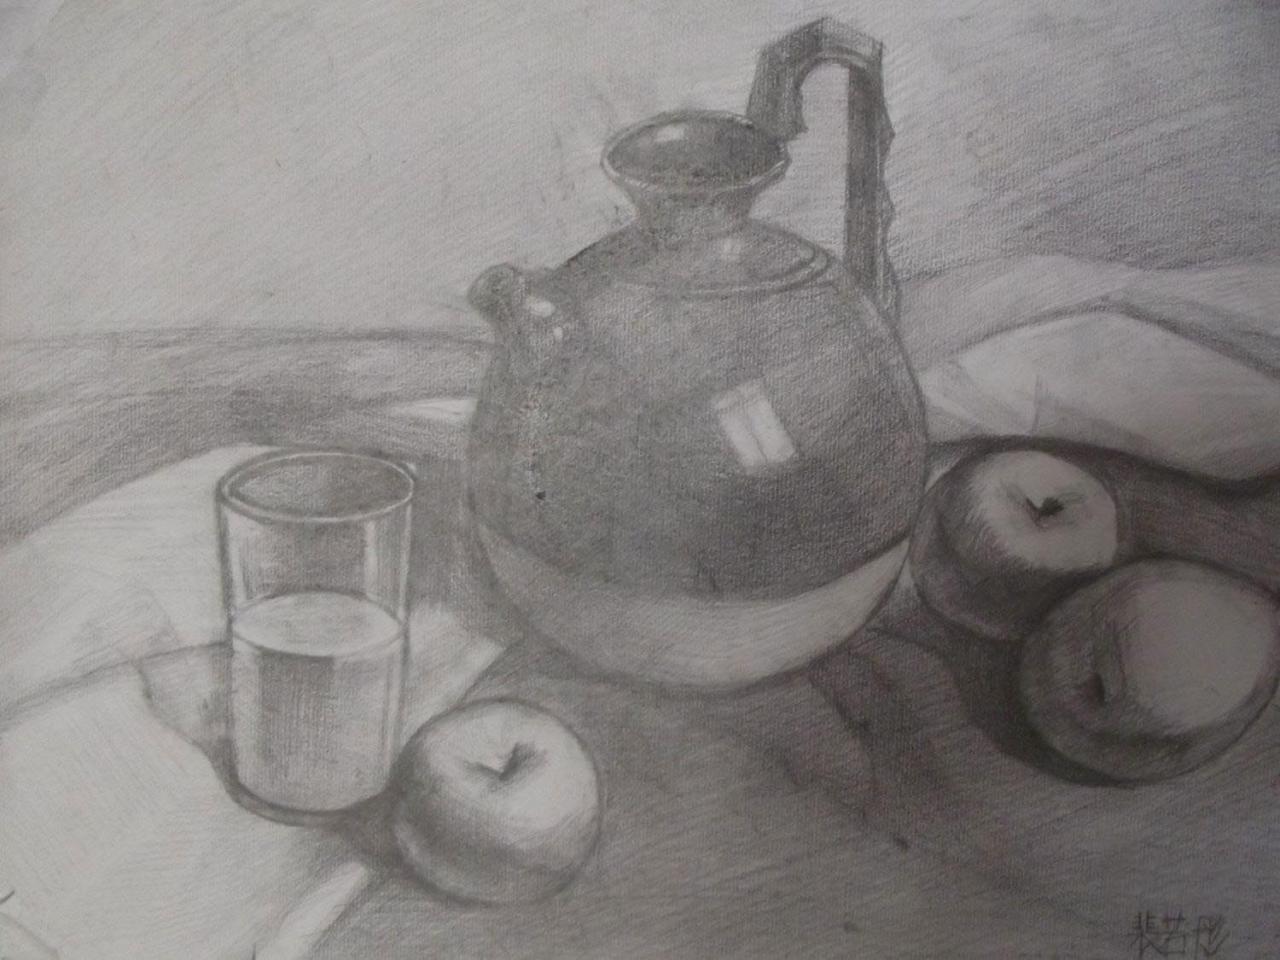 陶罐、苹果、玻璃杯 静物素描 裴若彤画